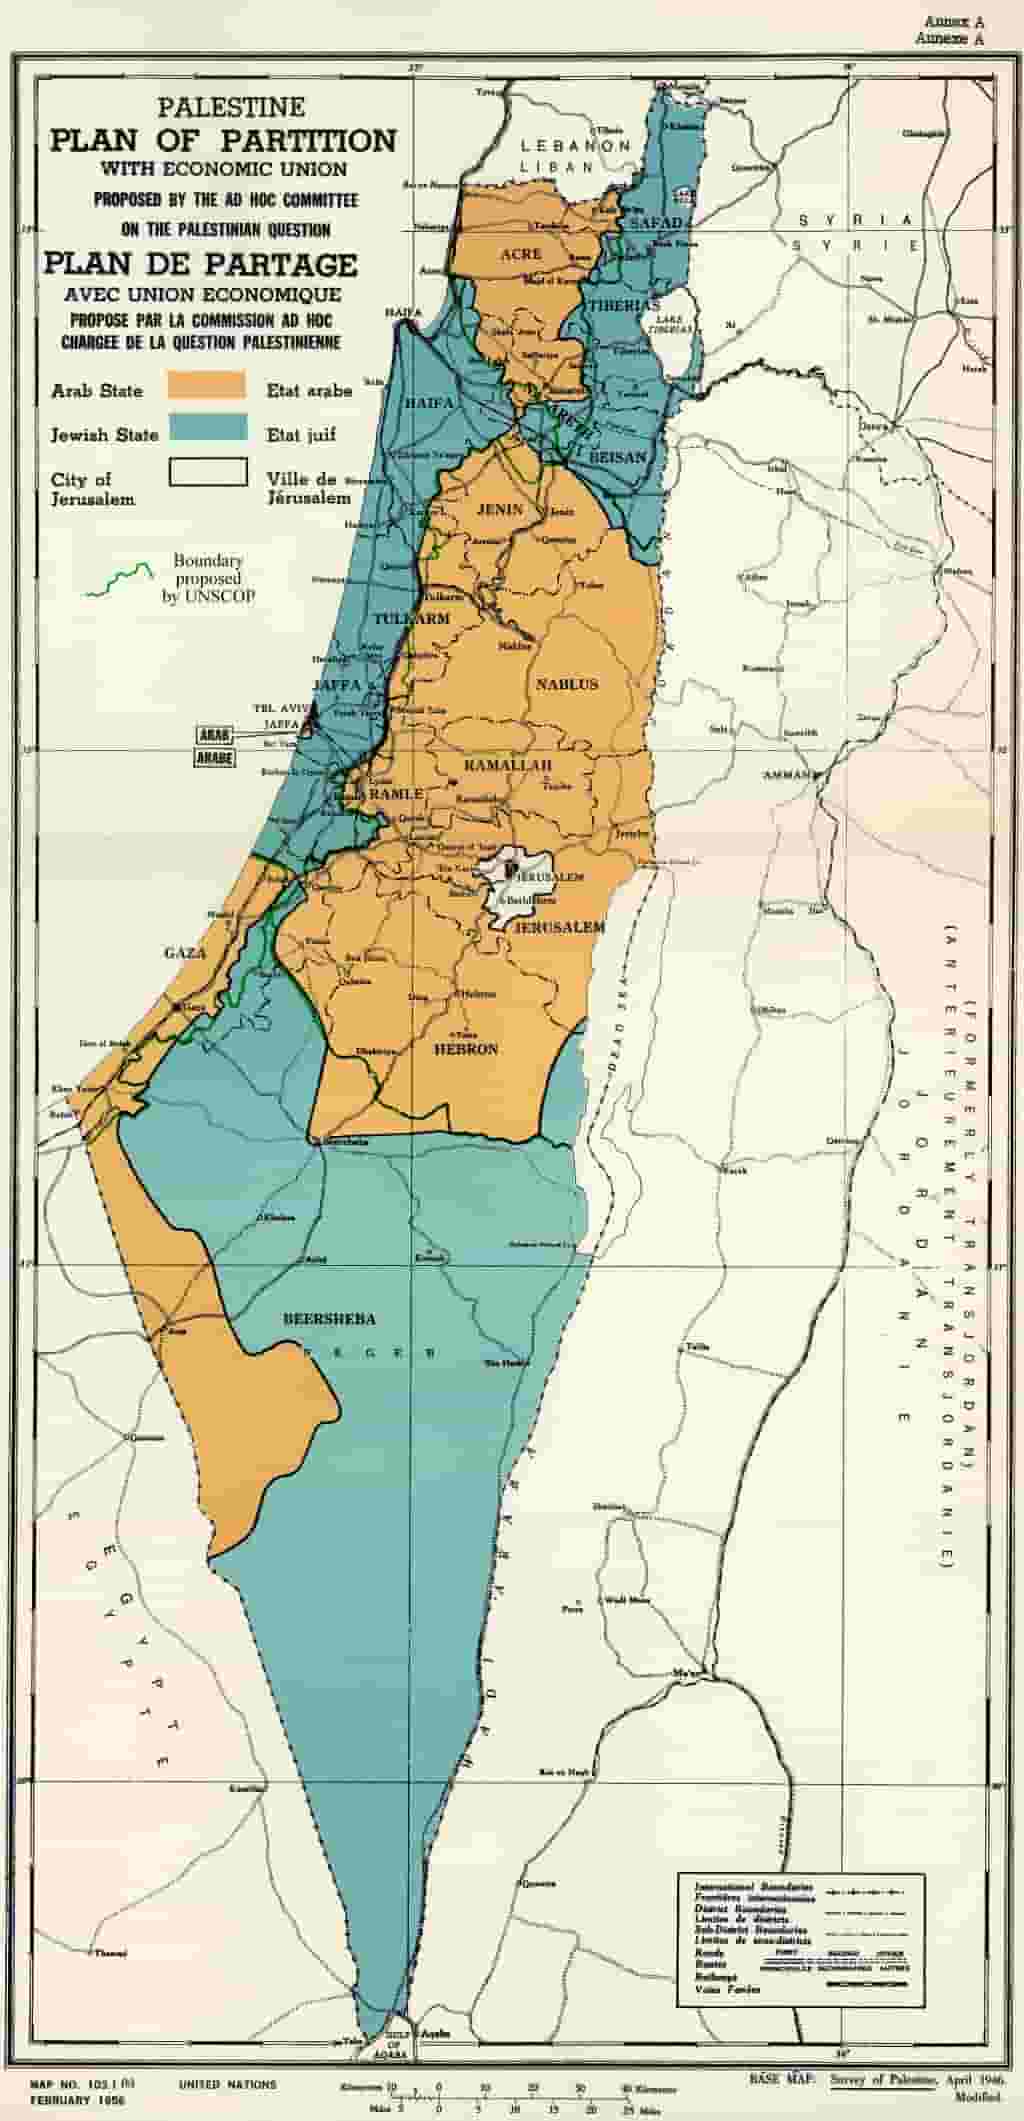 UN_Palestine_Partition_Versions_1947 70 Years Since the UN Partition Plan Vote 